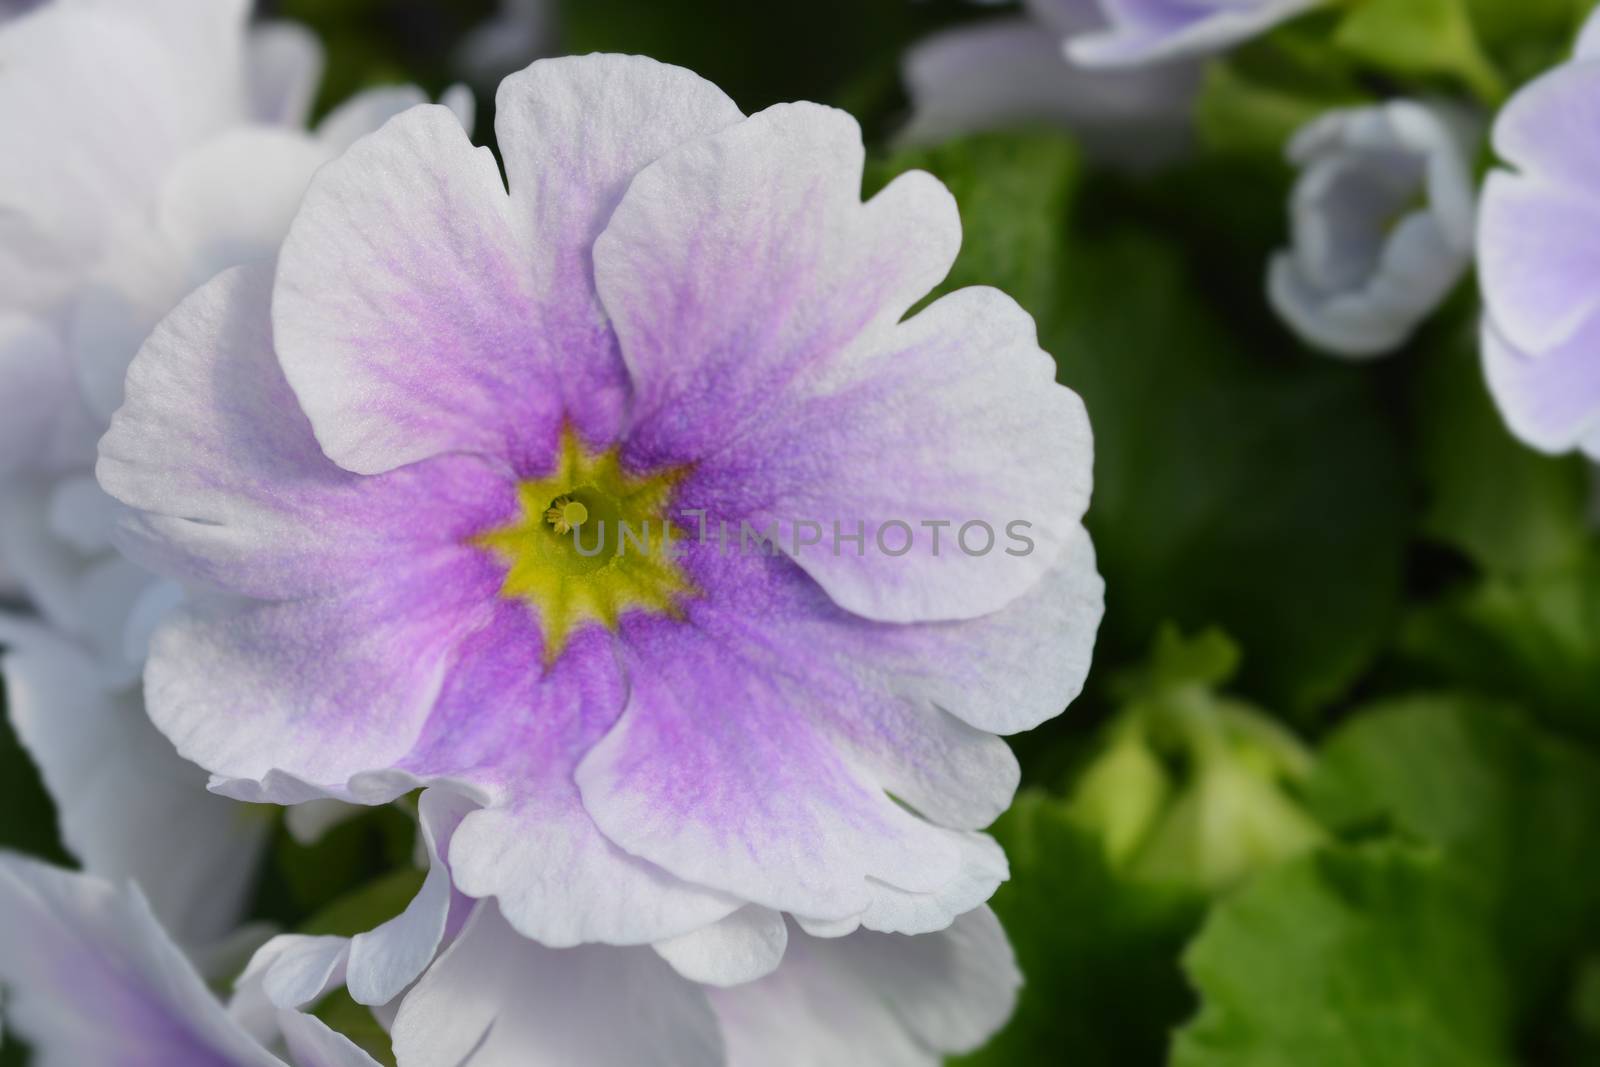 White and purple Poison primrose - Latin name - Primula obconica